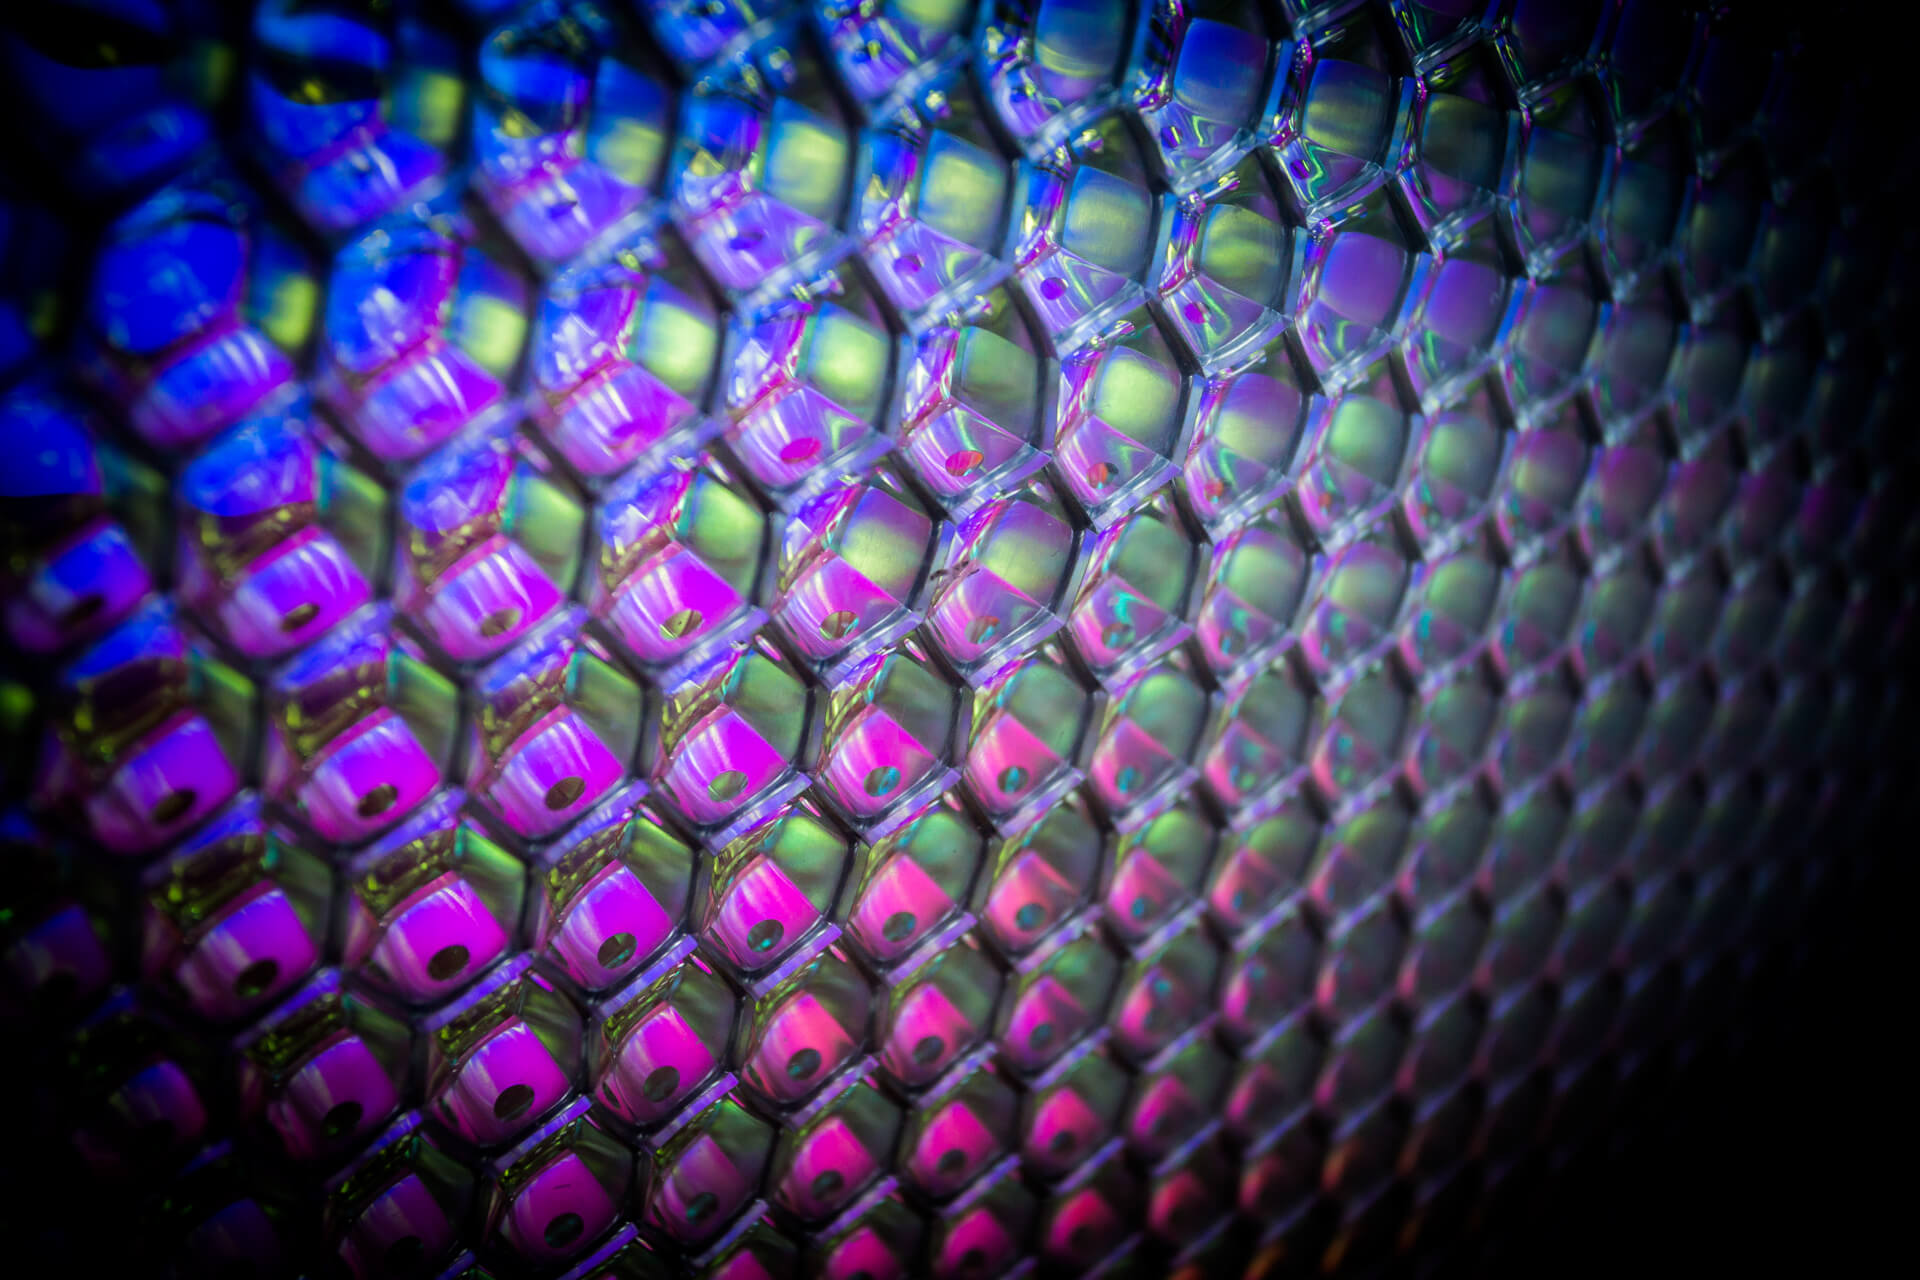 Polycarbonate honeycomb composite panels - colour honeycomb cells